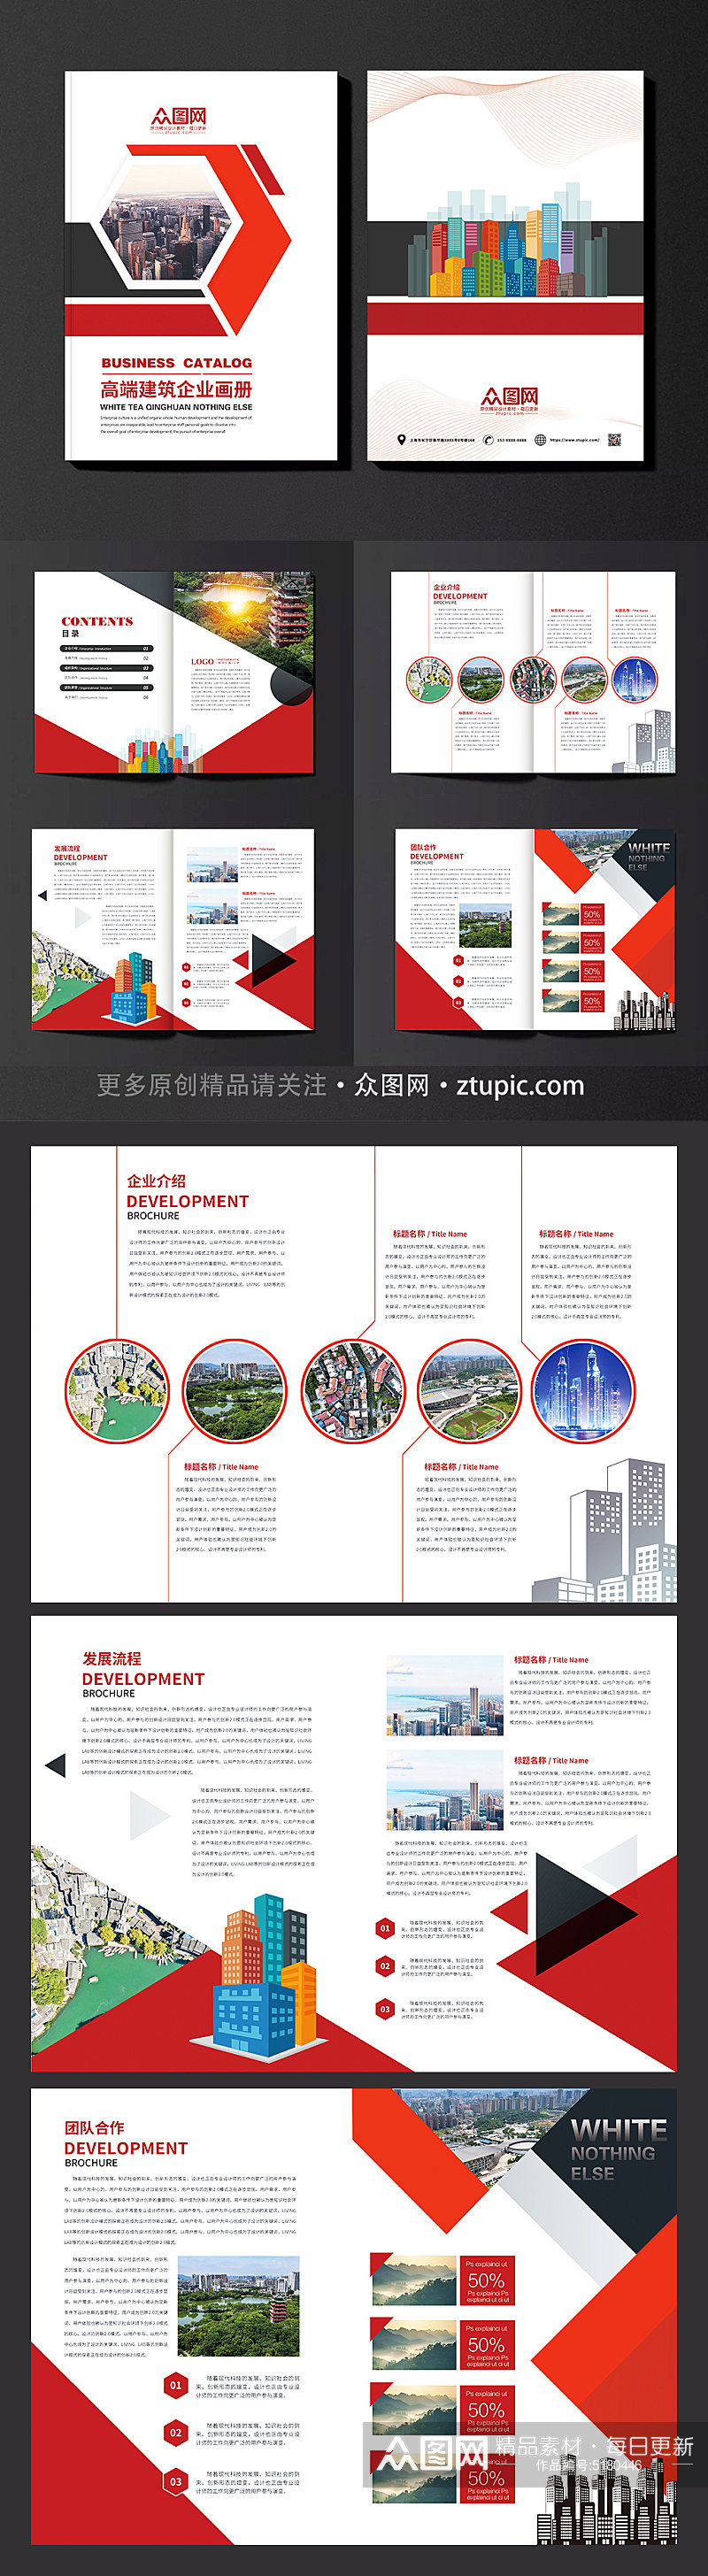 红色建筑建材企业画册设计素材